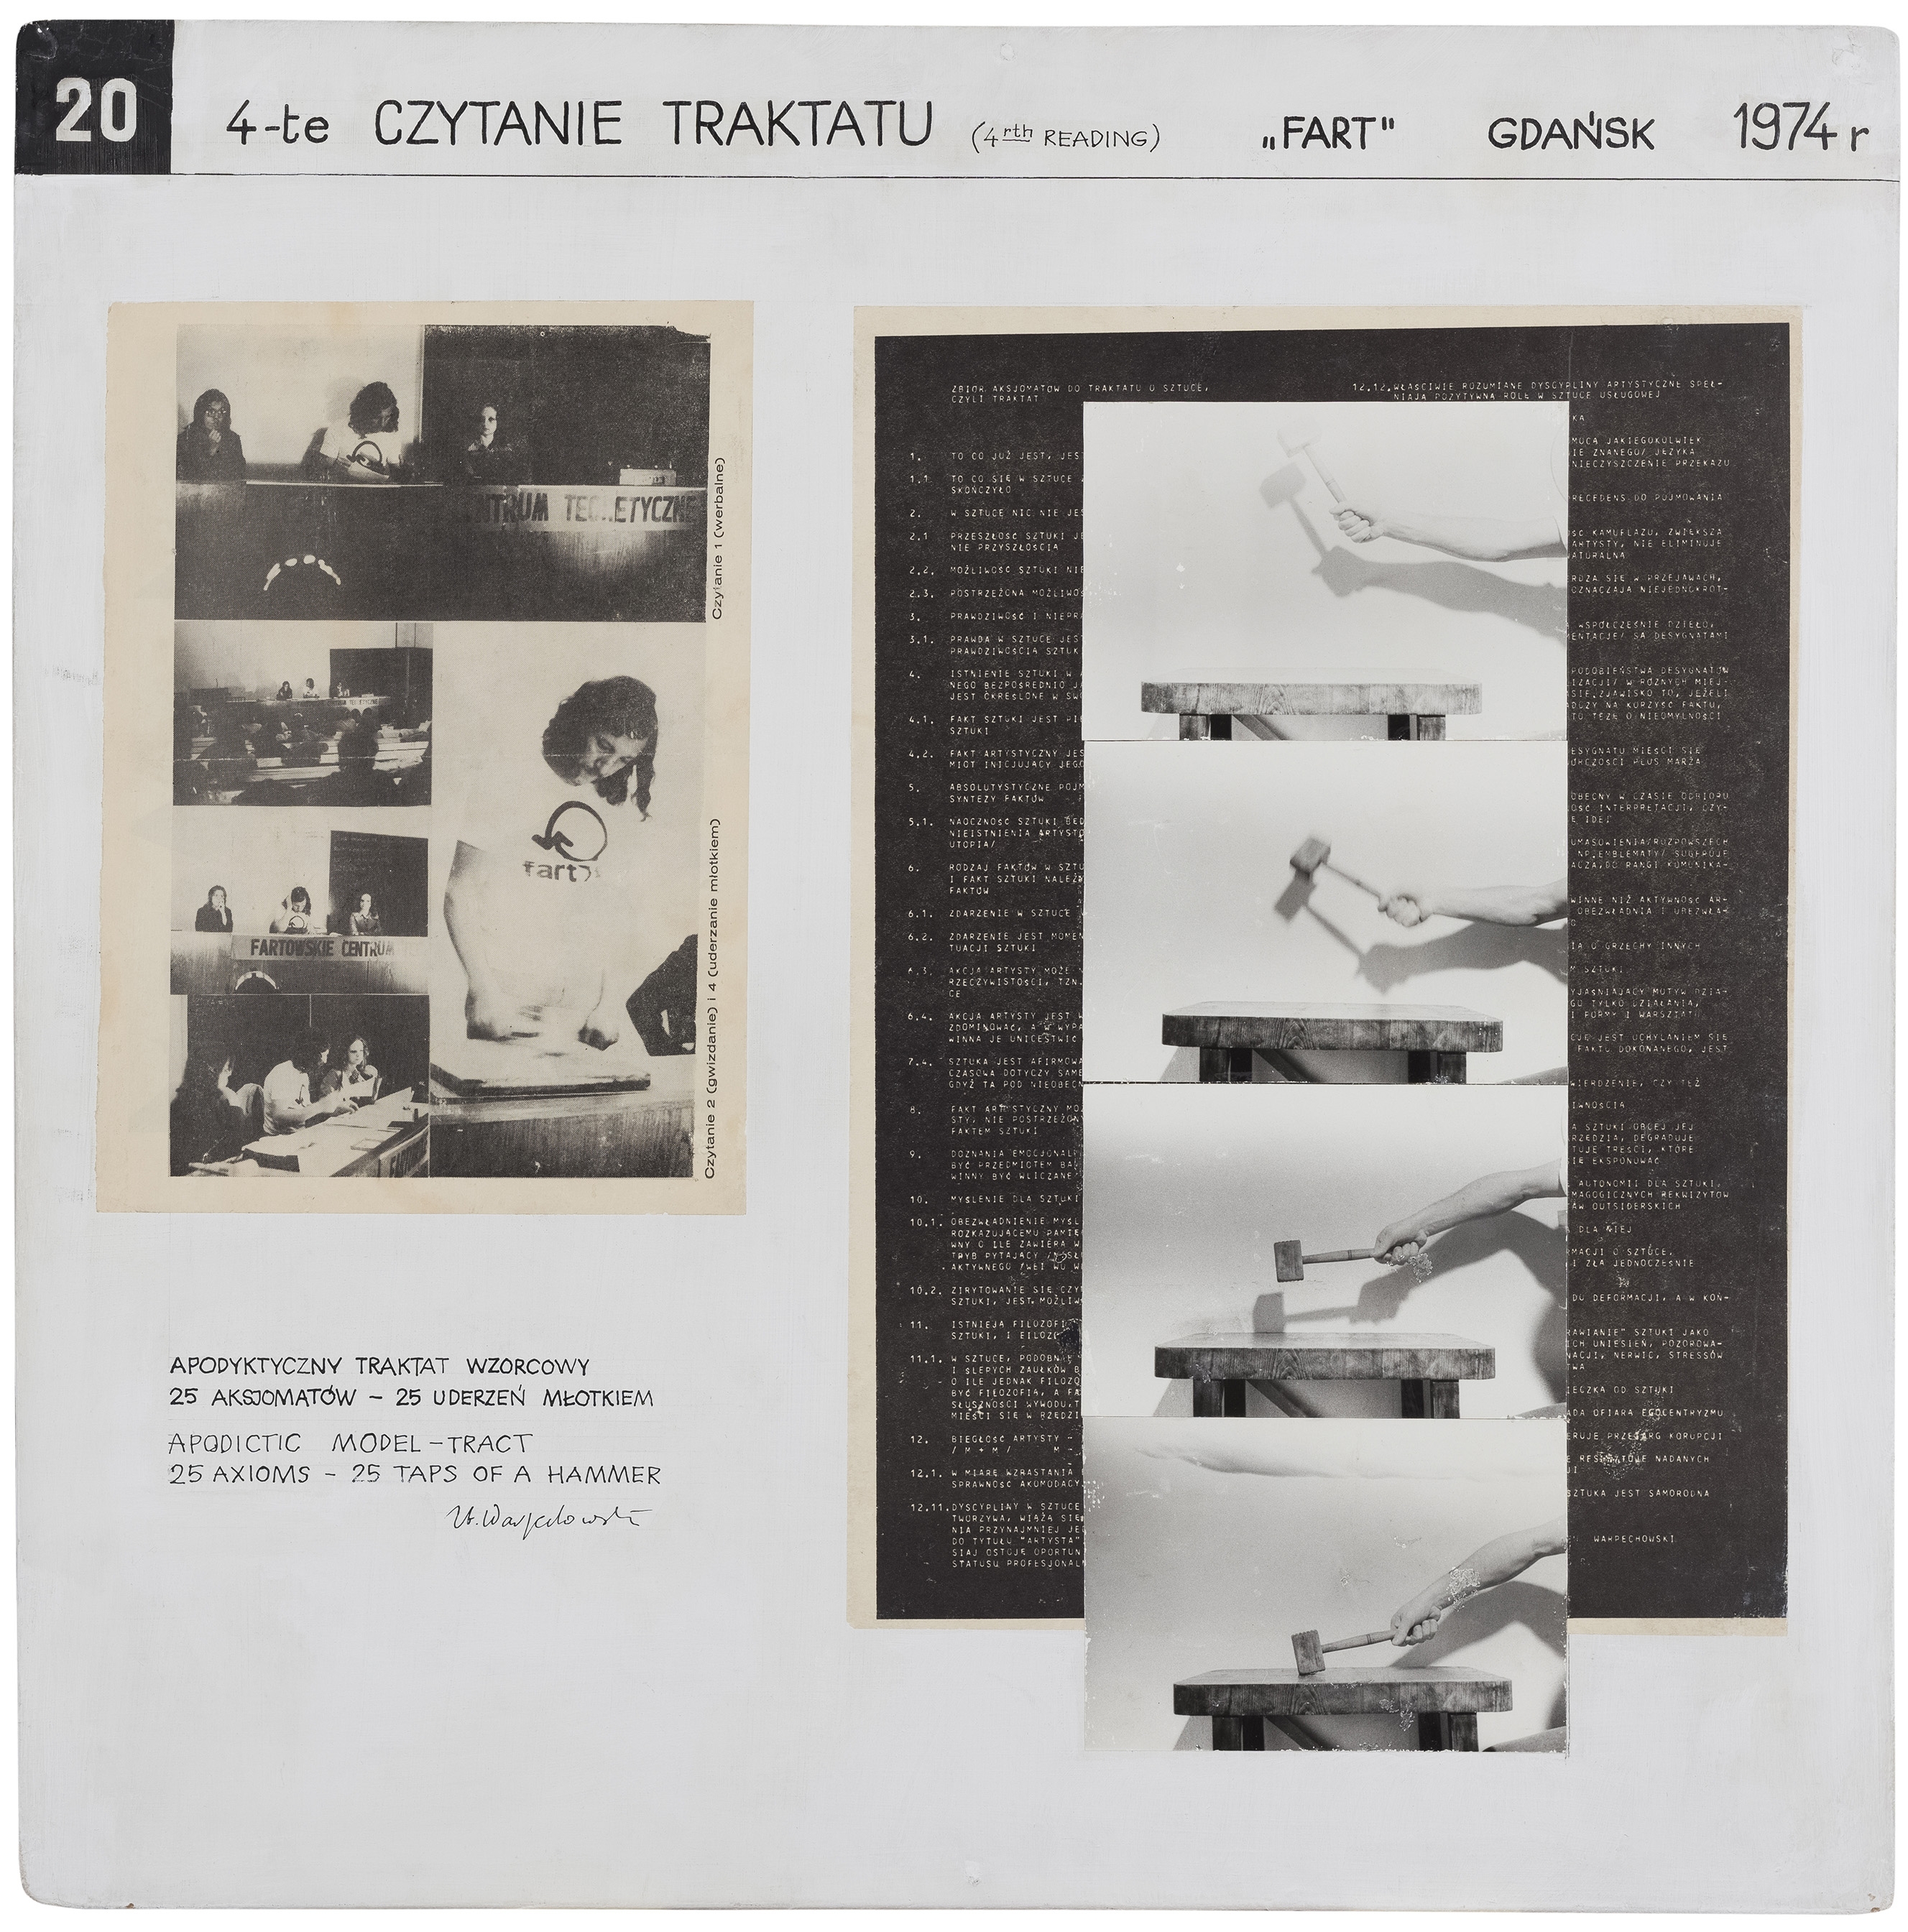 20. 4-te CZYTANIE TRAKTATU (4rth Reading), FART, Gdańsk, 1974 